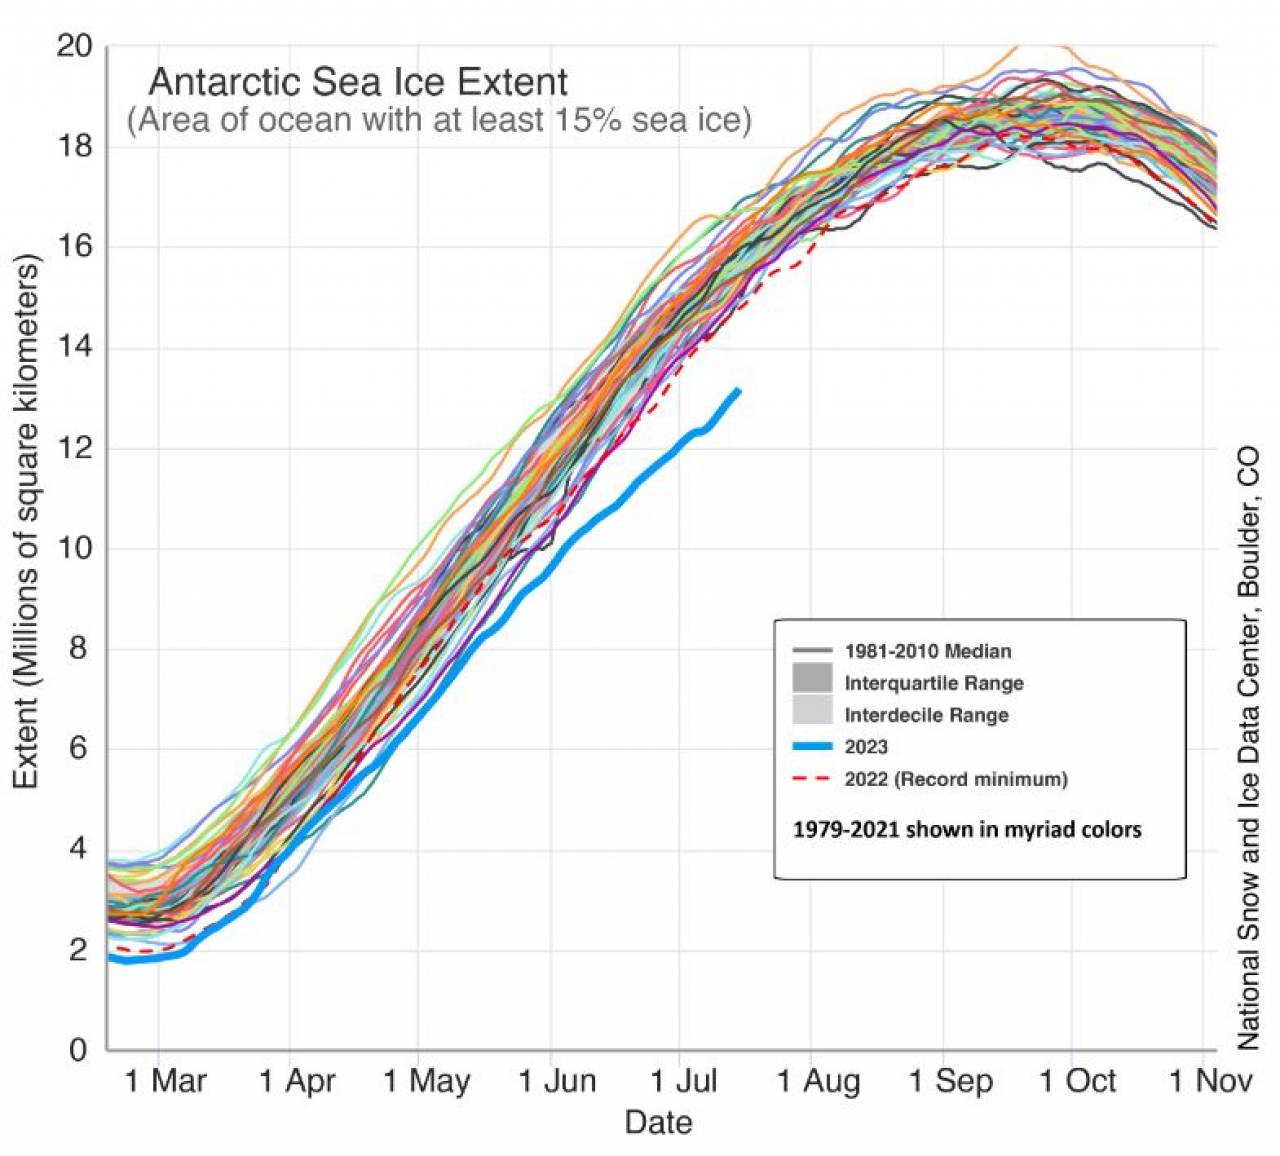 L'estensione dei ghiacci marini antartici confrontata rispetto alla media 1981-2010 ma anche agli altri anni: polverizzato il precedente record del 2022 di luglio